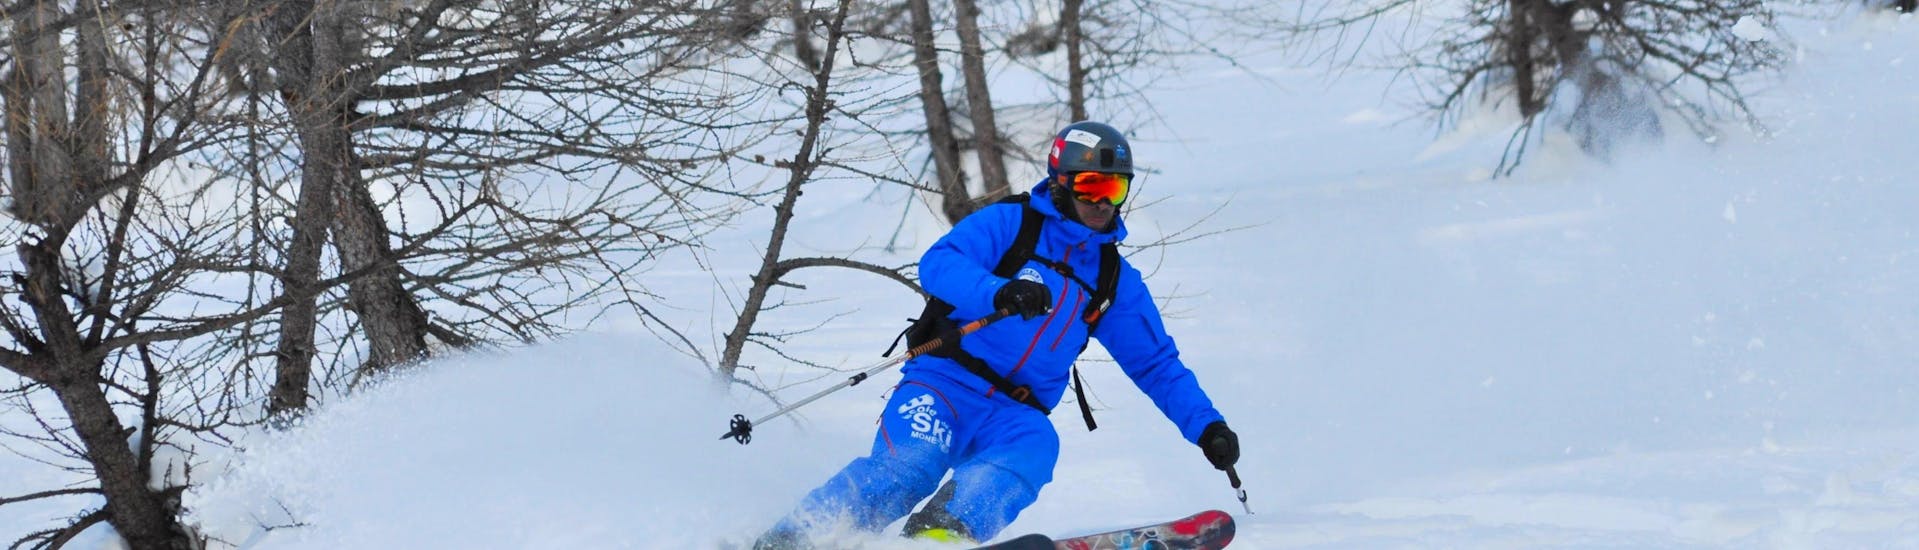 Off-piste skilessen (15-25 jaar) voor ervaren skiërs.